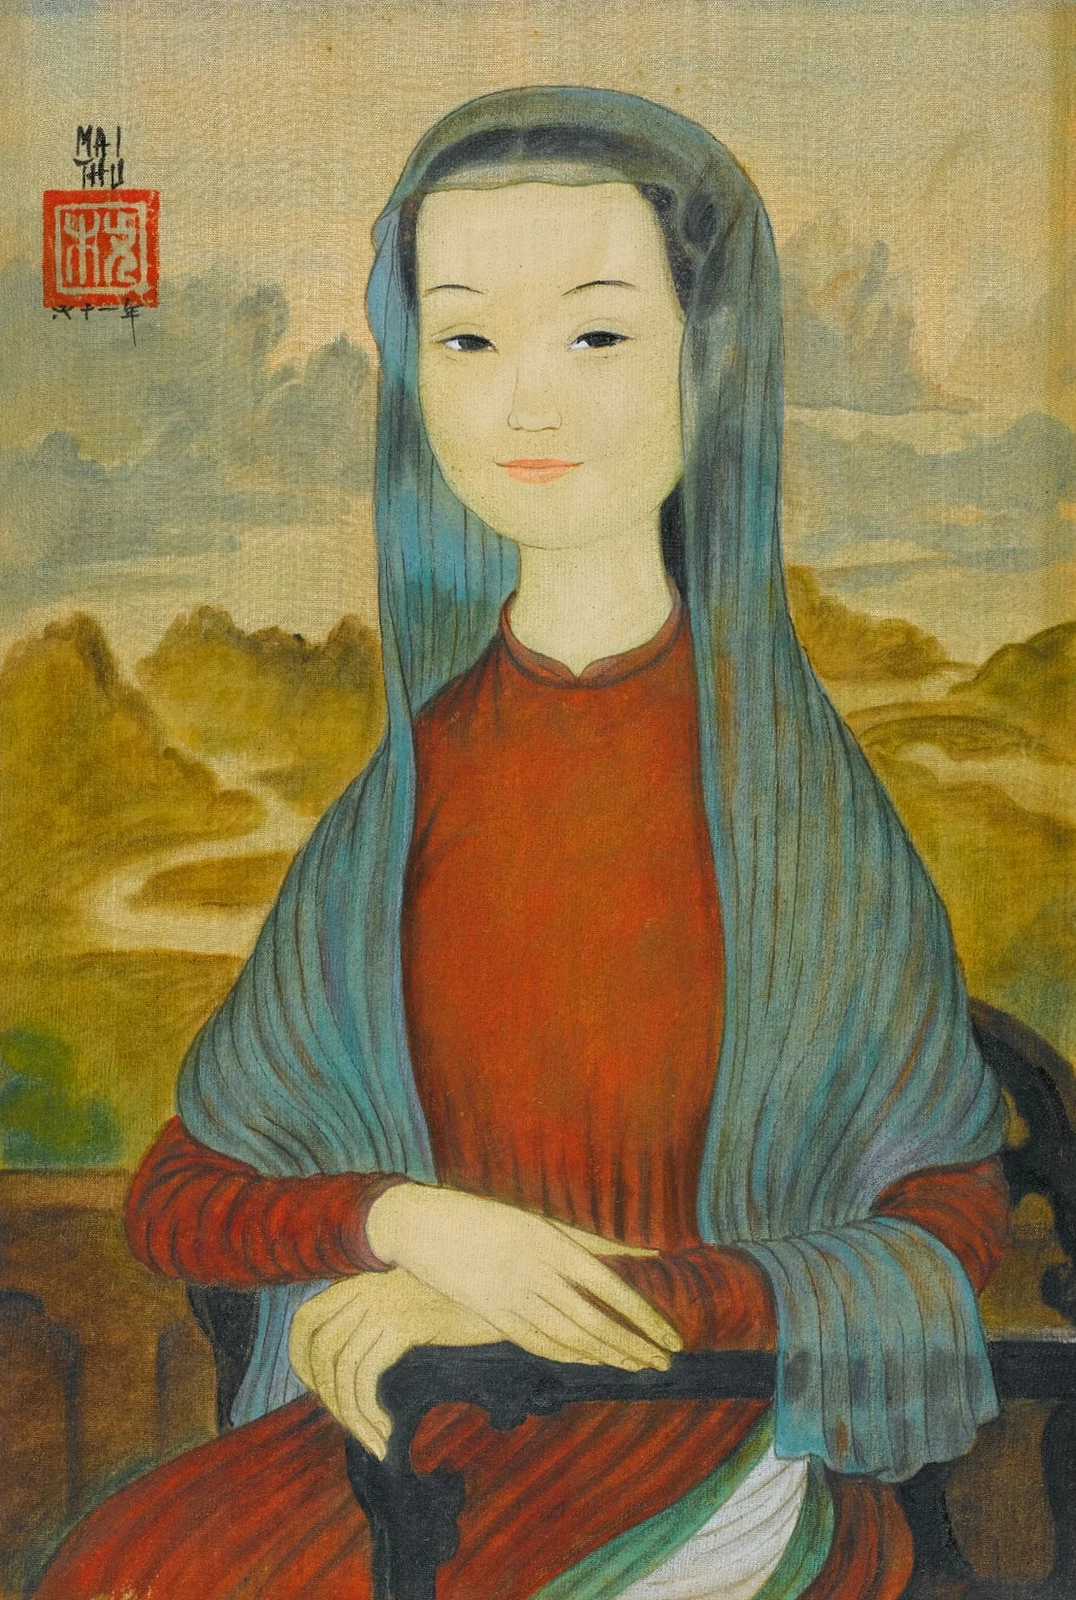 Mai Trung Thứ, The Artists